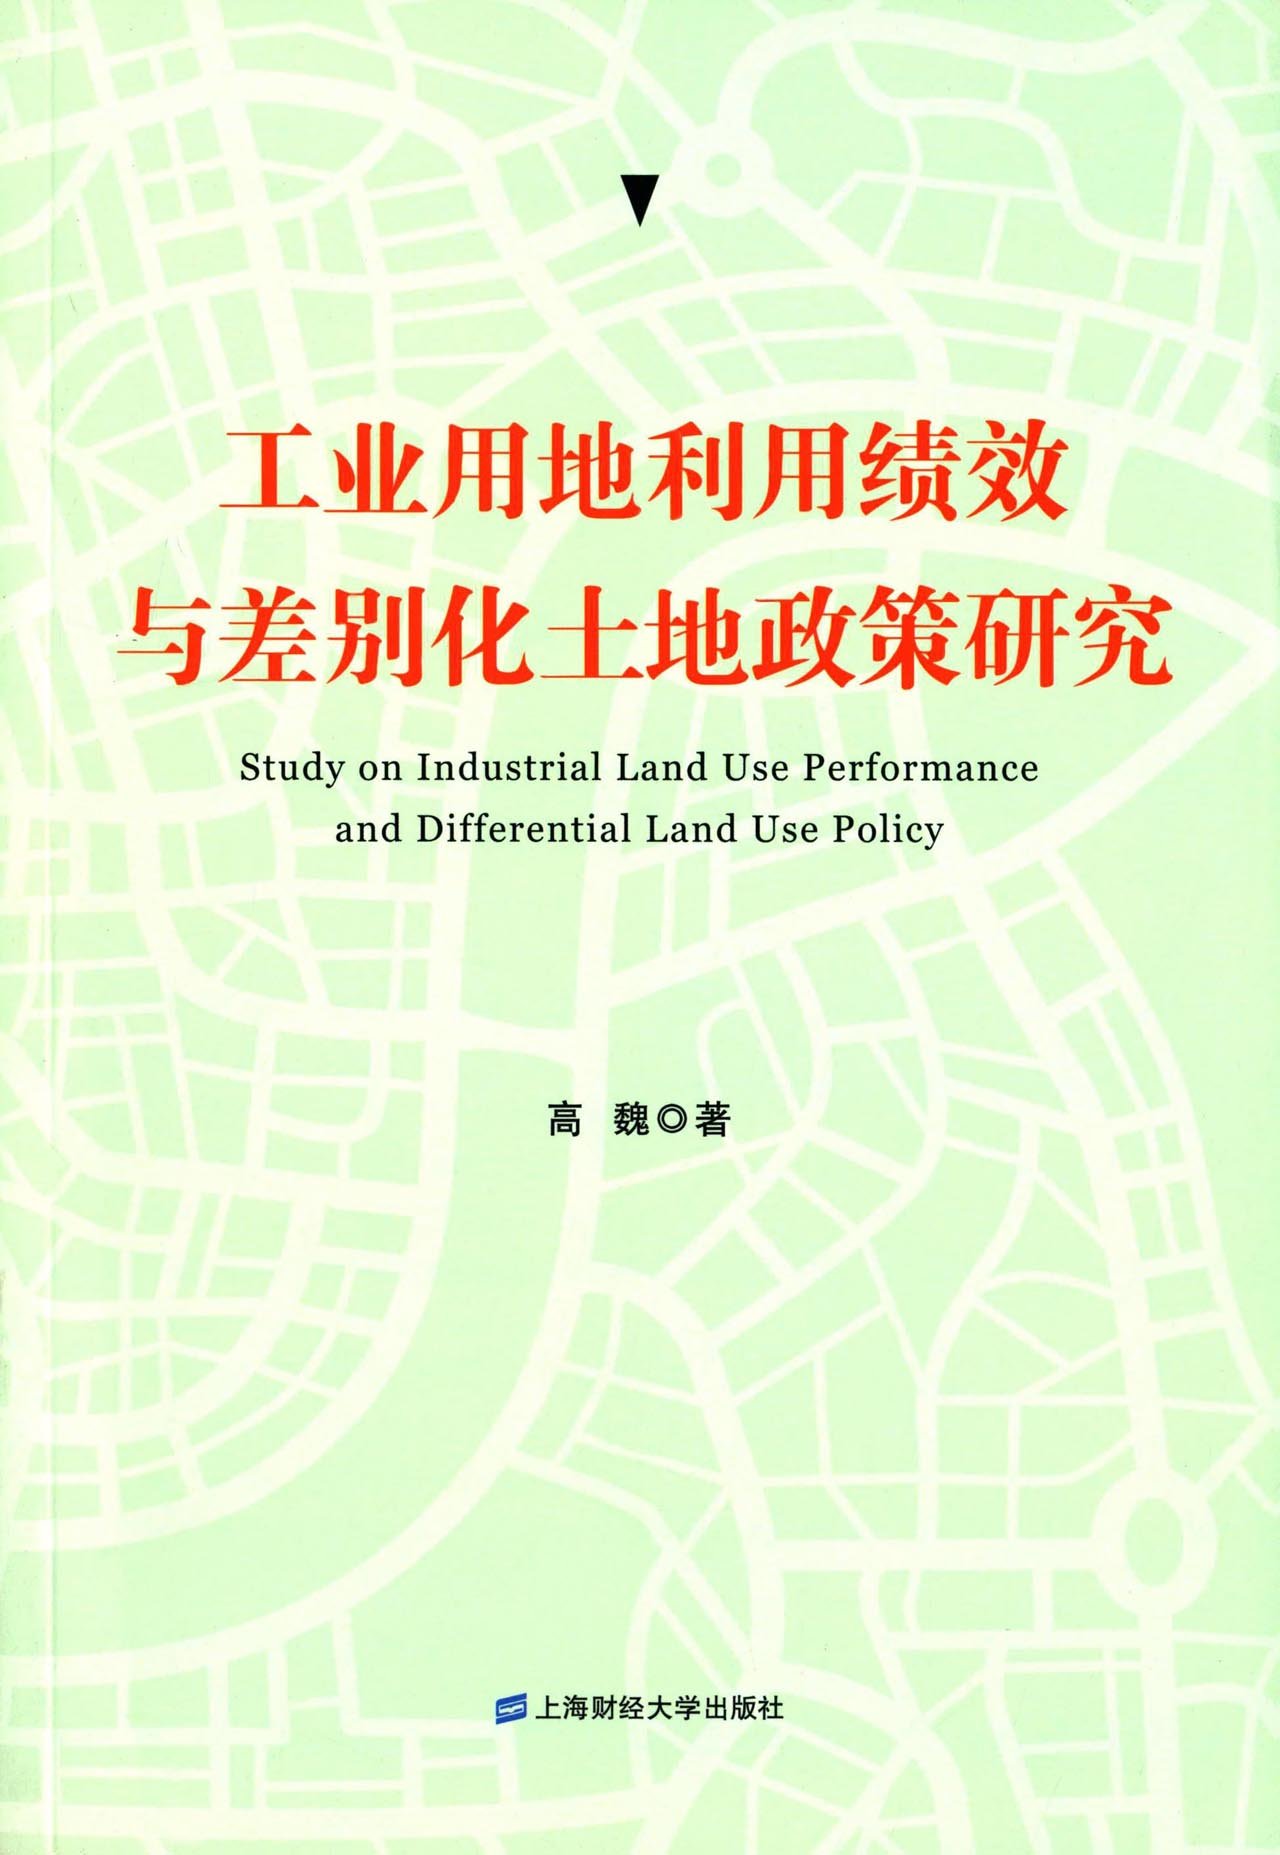 工业用地利用绩效与差别化土地政策研究 azw3格式下载